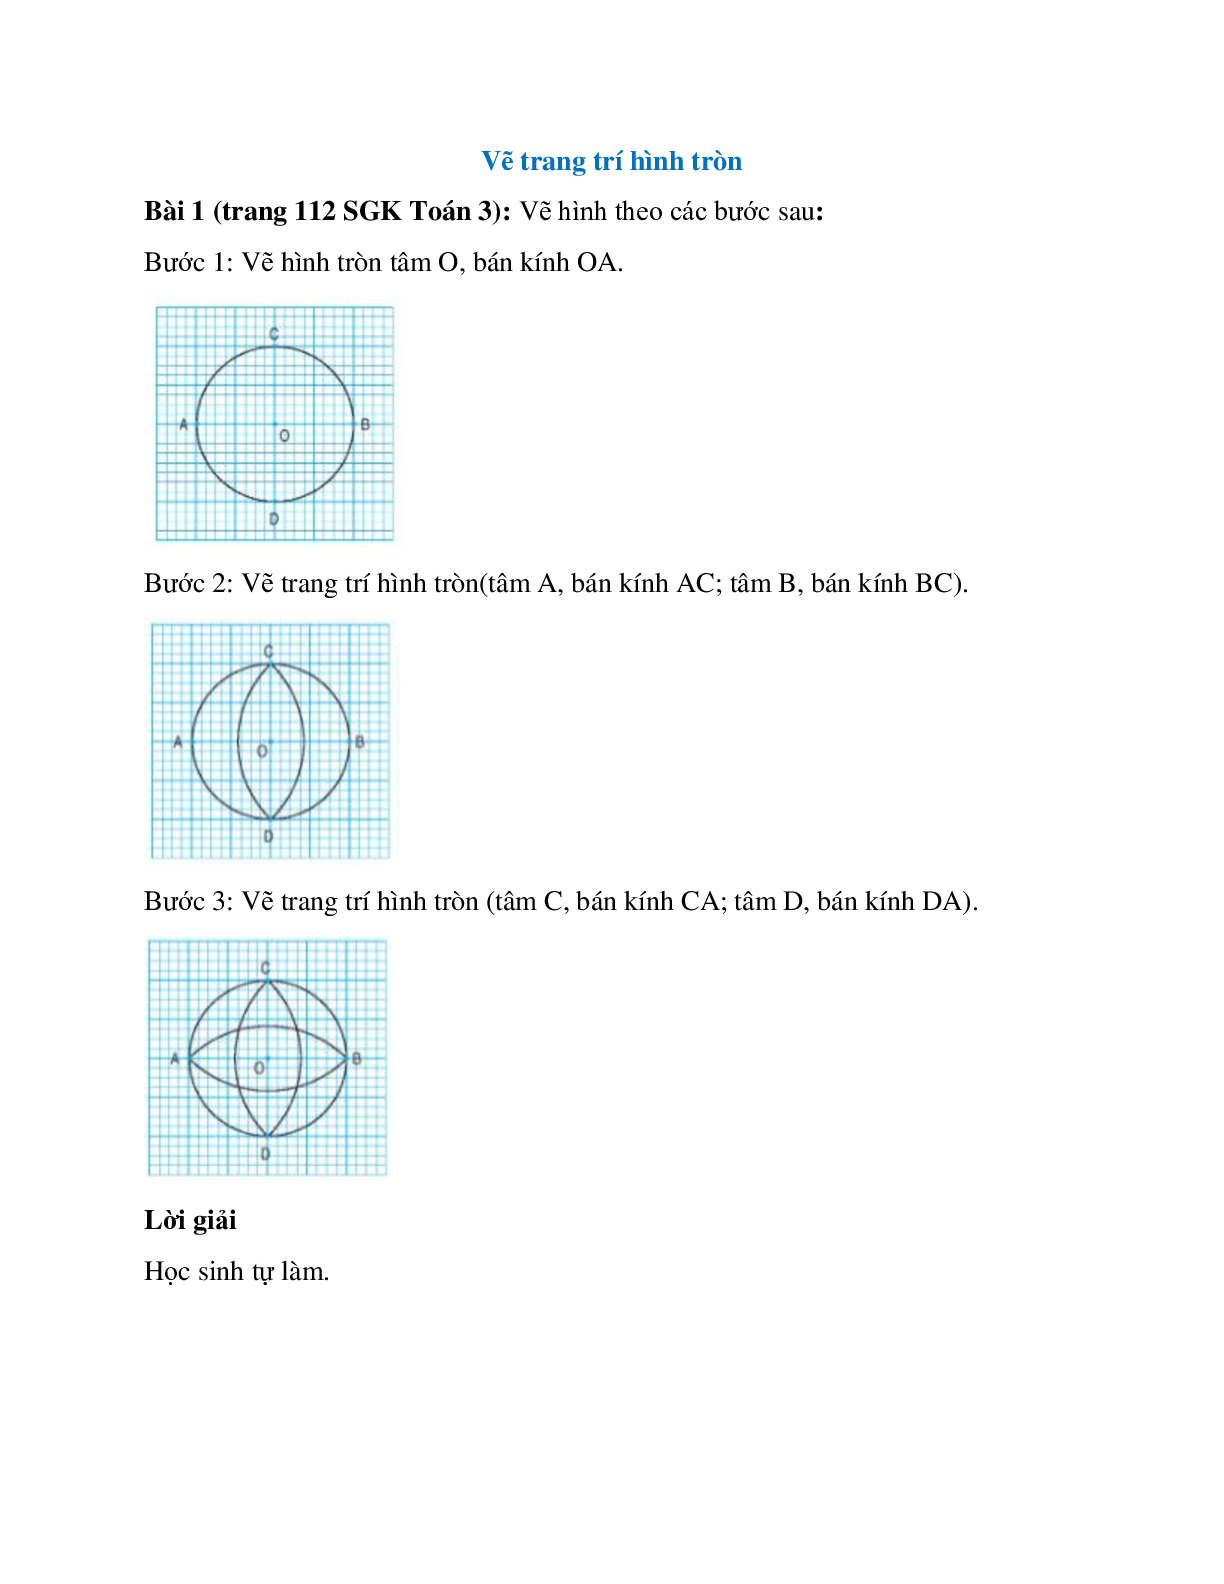 Vẽ hình theo các bước sau Bước 1: Vẽ hình tròn tâm O, bán kính OA